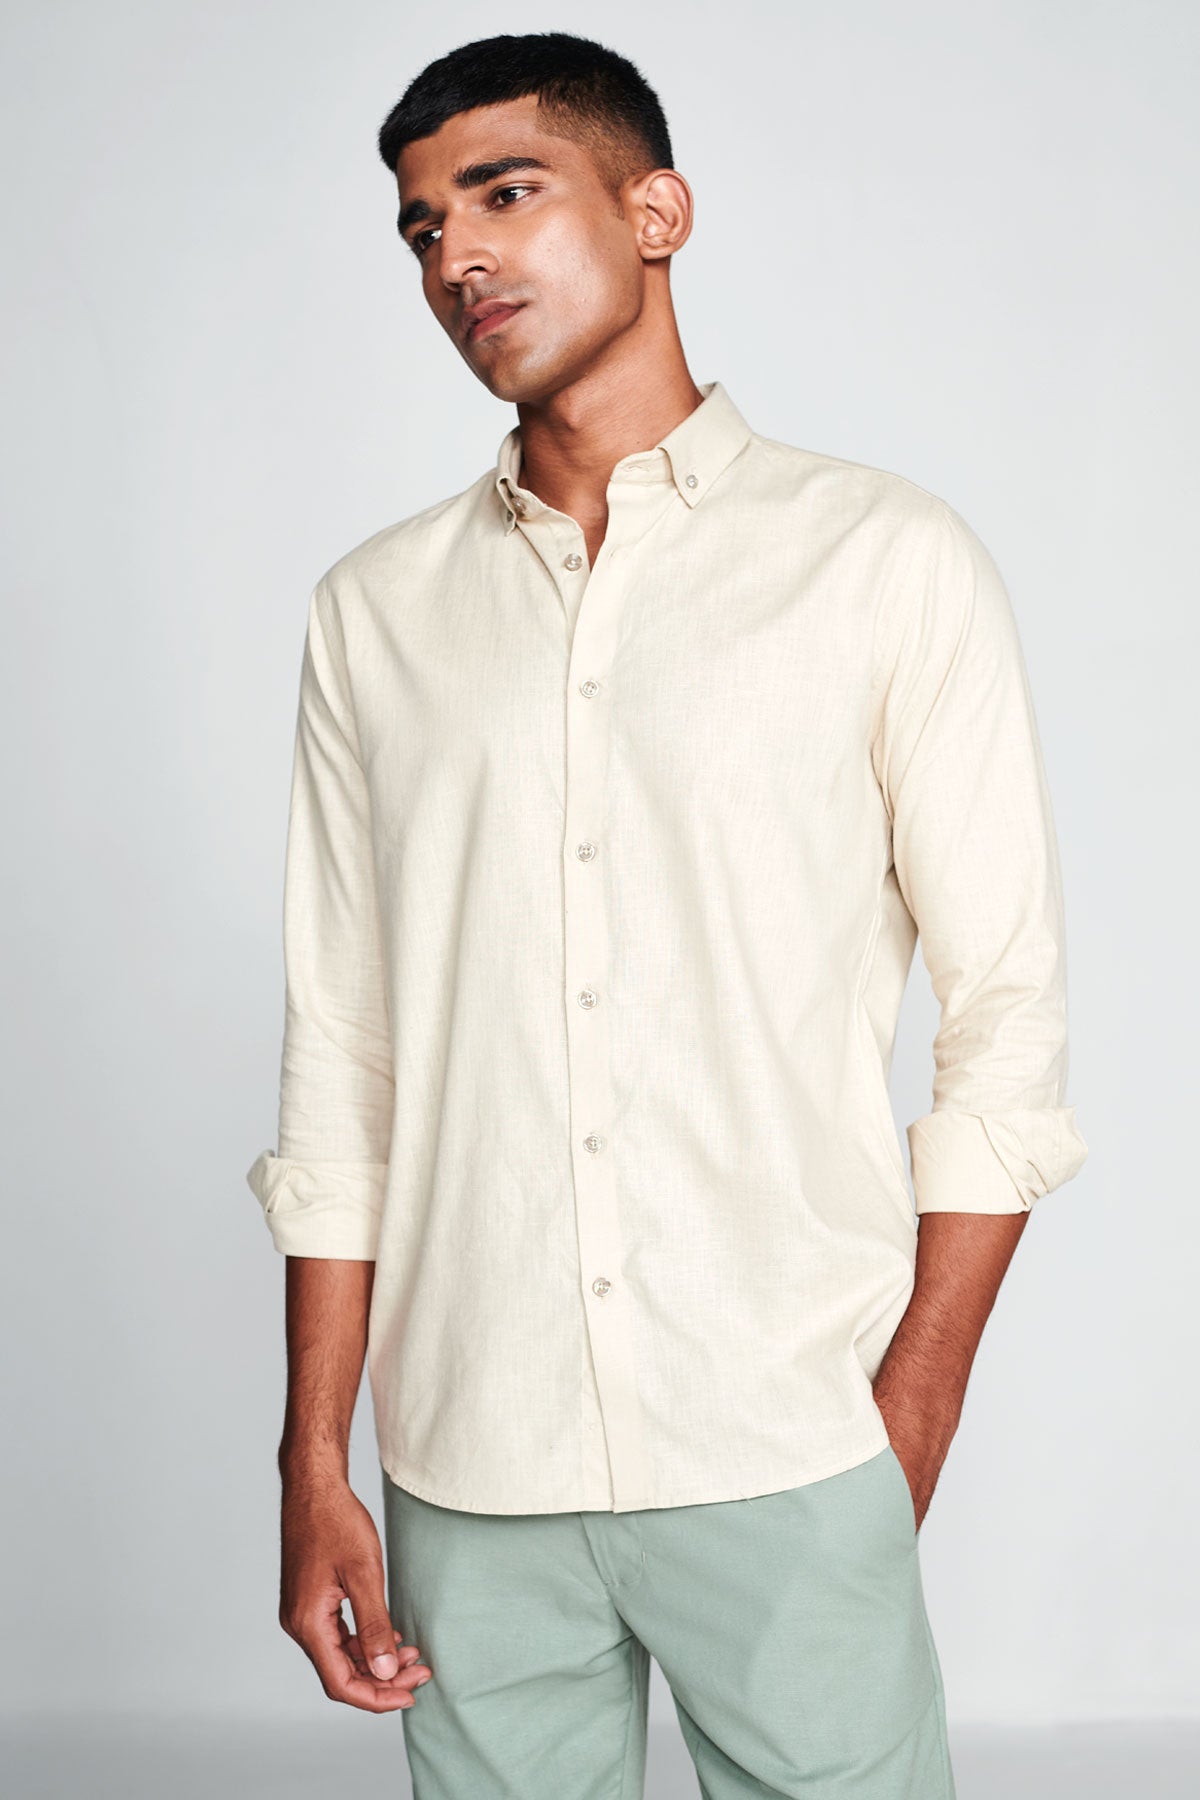 Buy Men's Light Beige Full Sleeves Cotton Linen shirts